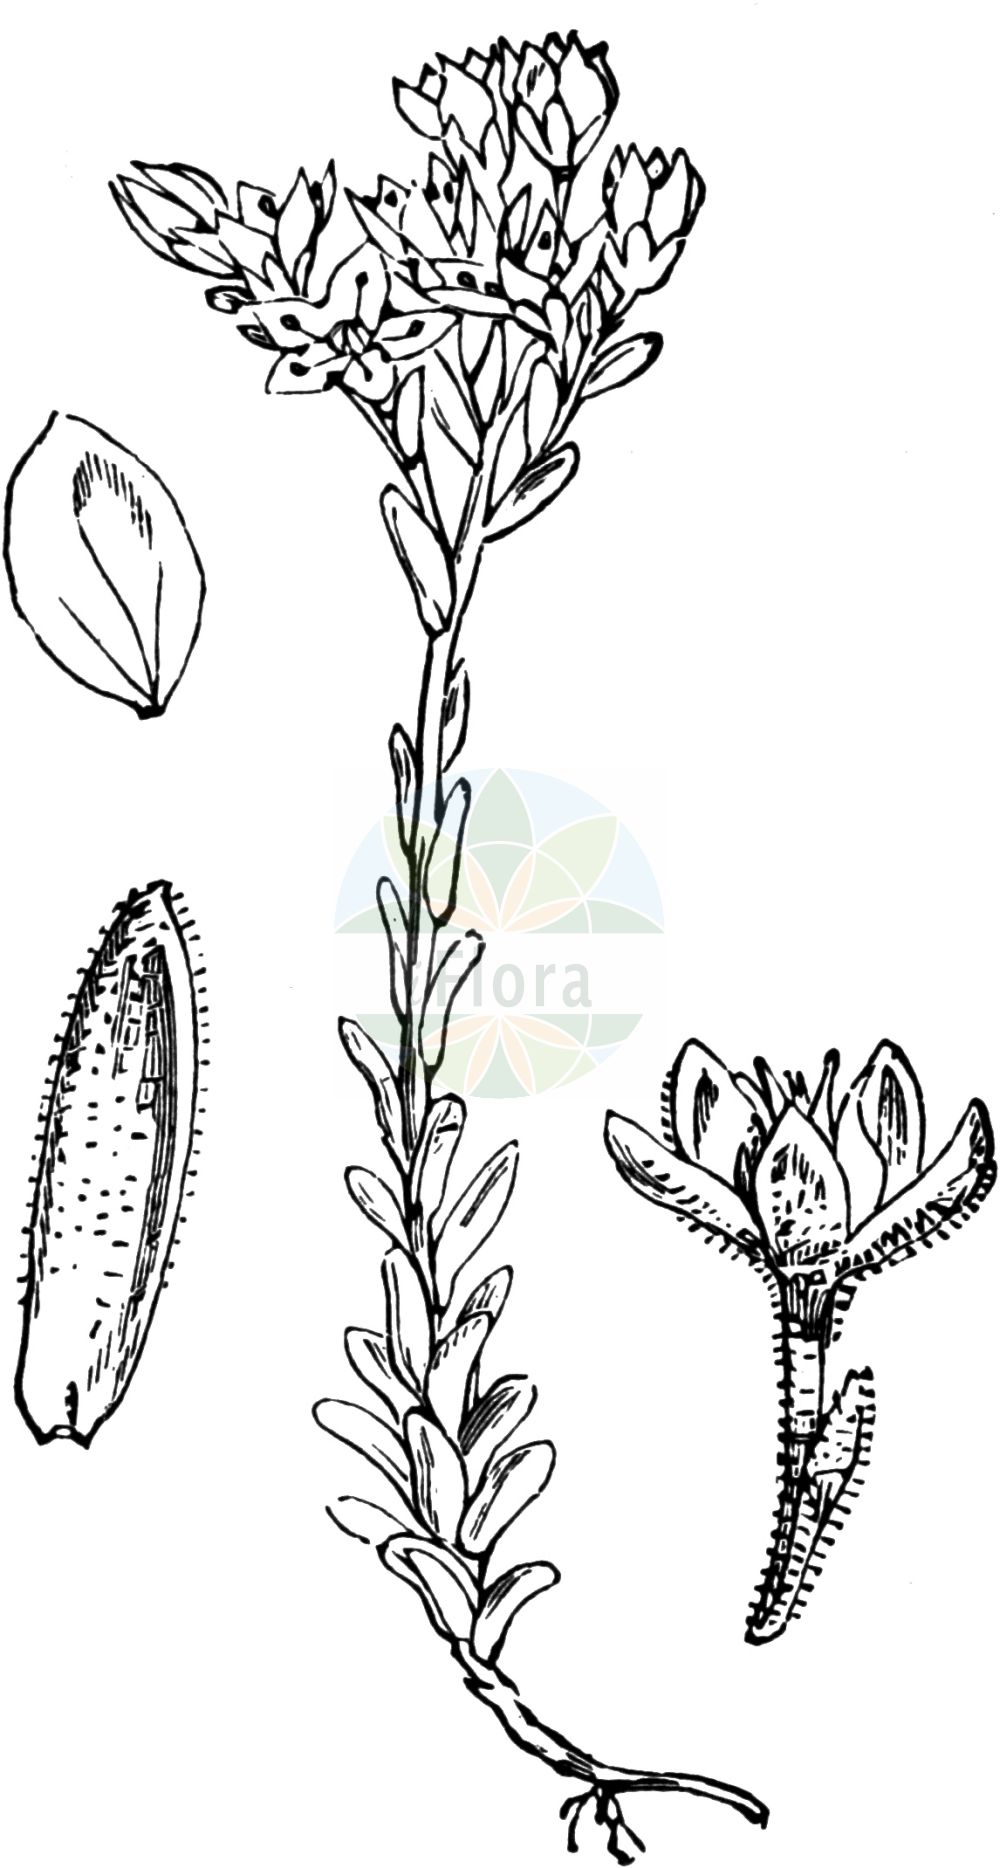 Historische Abbildung von Sedum villosum (Sumpf-Fetthenne - Hairy Stonecrop). Das Bild zeigt Blatt, Bluete, Frucht und Same. ---- Historical Drawing of Sedum villosum (Sumpf-Fetthenne - Hairy Stonecrop). The image is showing leaf, flower, fruit and seed.(Sedum villosum,Sumpf-Fetthenne,Hairy Stonecrop,Oreosedum villosum,Sedum pentandrum,Sedum villosum,Sedum villosum L. var.,Sumpf-Fetthenne,Druesen-Mauerpfeffer,Moor-Mauerpfeffer,Hairy Stonecrop,Purple Stonecrop,Sedum,Fetthenne,Stonecrop,Crassulaceae,Dickblattgewächse,Stonecrop family,Blatt,Bluete,Frucht,Same,leaf,flower,fruit,seed,Fitch et al. (1880))